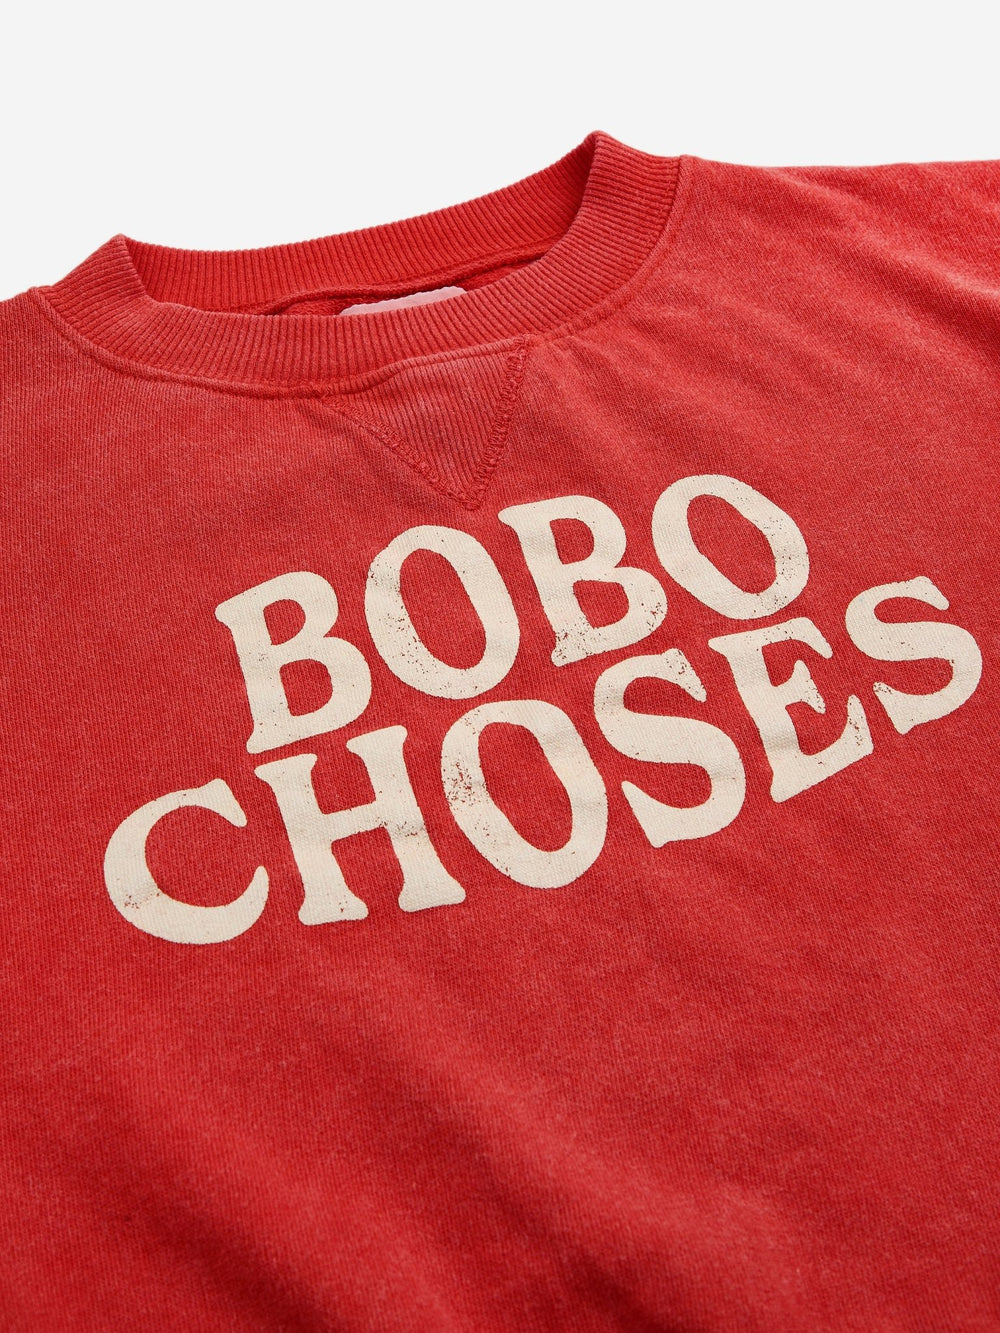 Bobo Choses Stripes Sweatshirt - Red - Posh New York